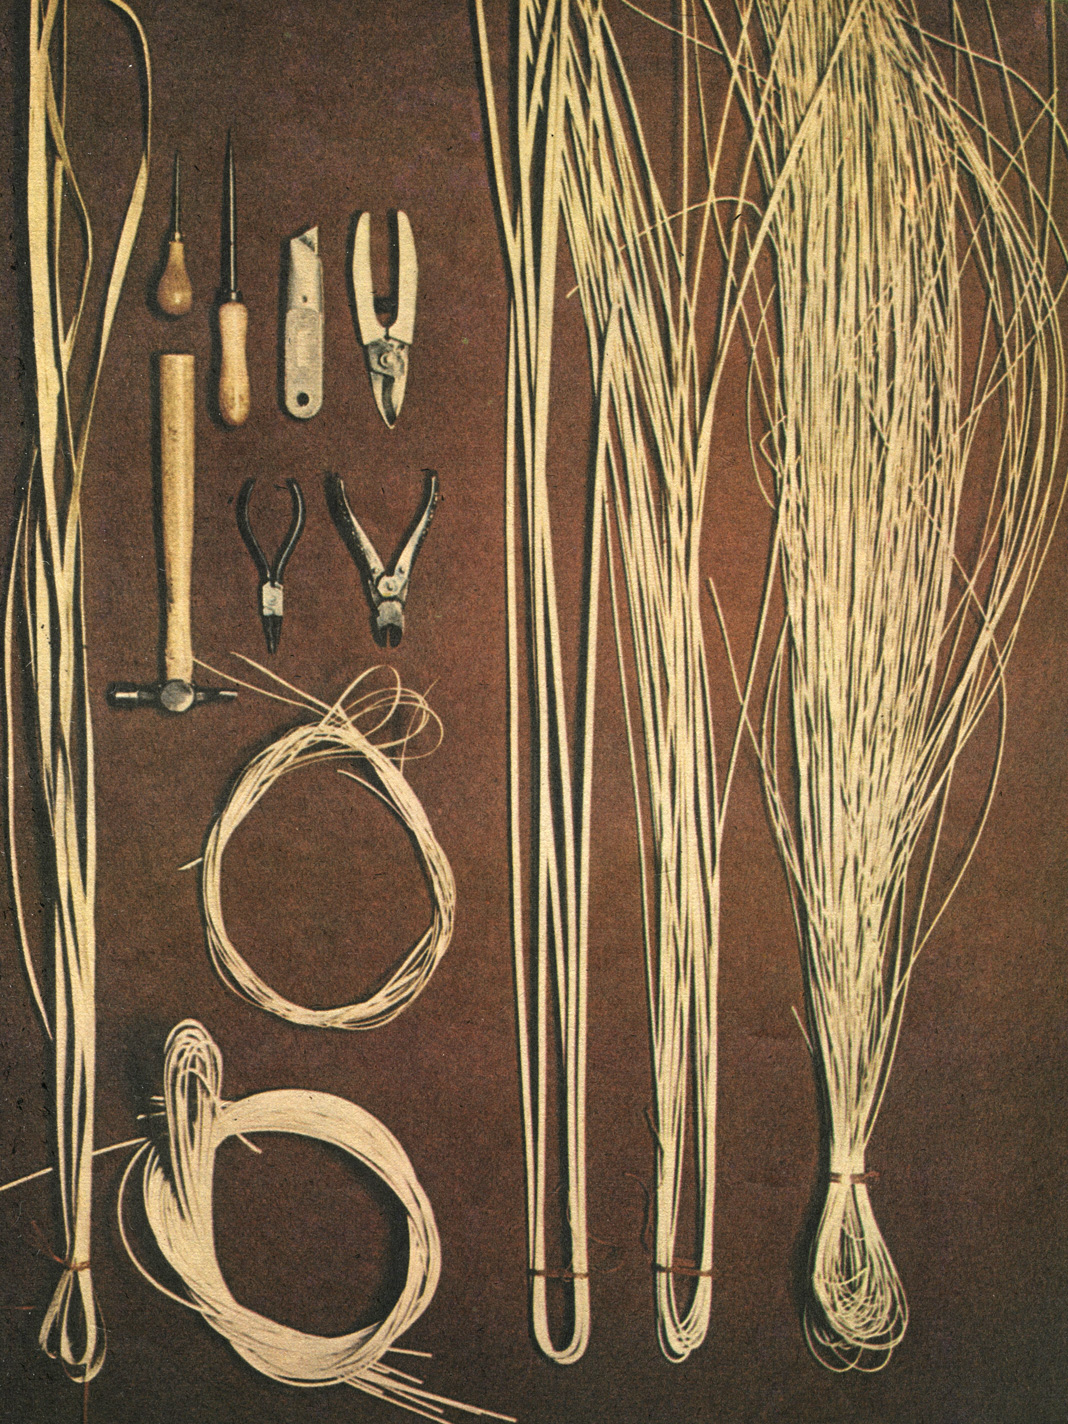 Для изготовления плетеных изделий вам понадобятся - слева и вверху: прутья различной толщины (диаметр прутков может быть от 1 до 10 мм), тонкие прутки предназначены для плетения, а самые толстые - для изготовления ручек корзин; внизу: кусачки, круглогубцы; молоток; секатор (садовые ножницы); нож- резак; большое и маленькое шило; справа: лента для плетения стенок корзин (см. §3. Круглый поднос)